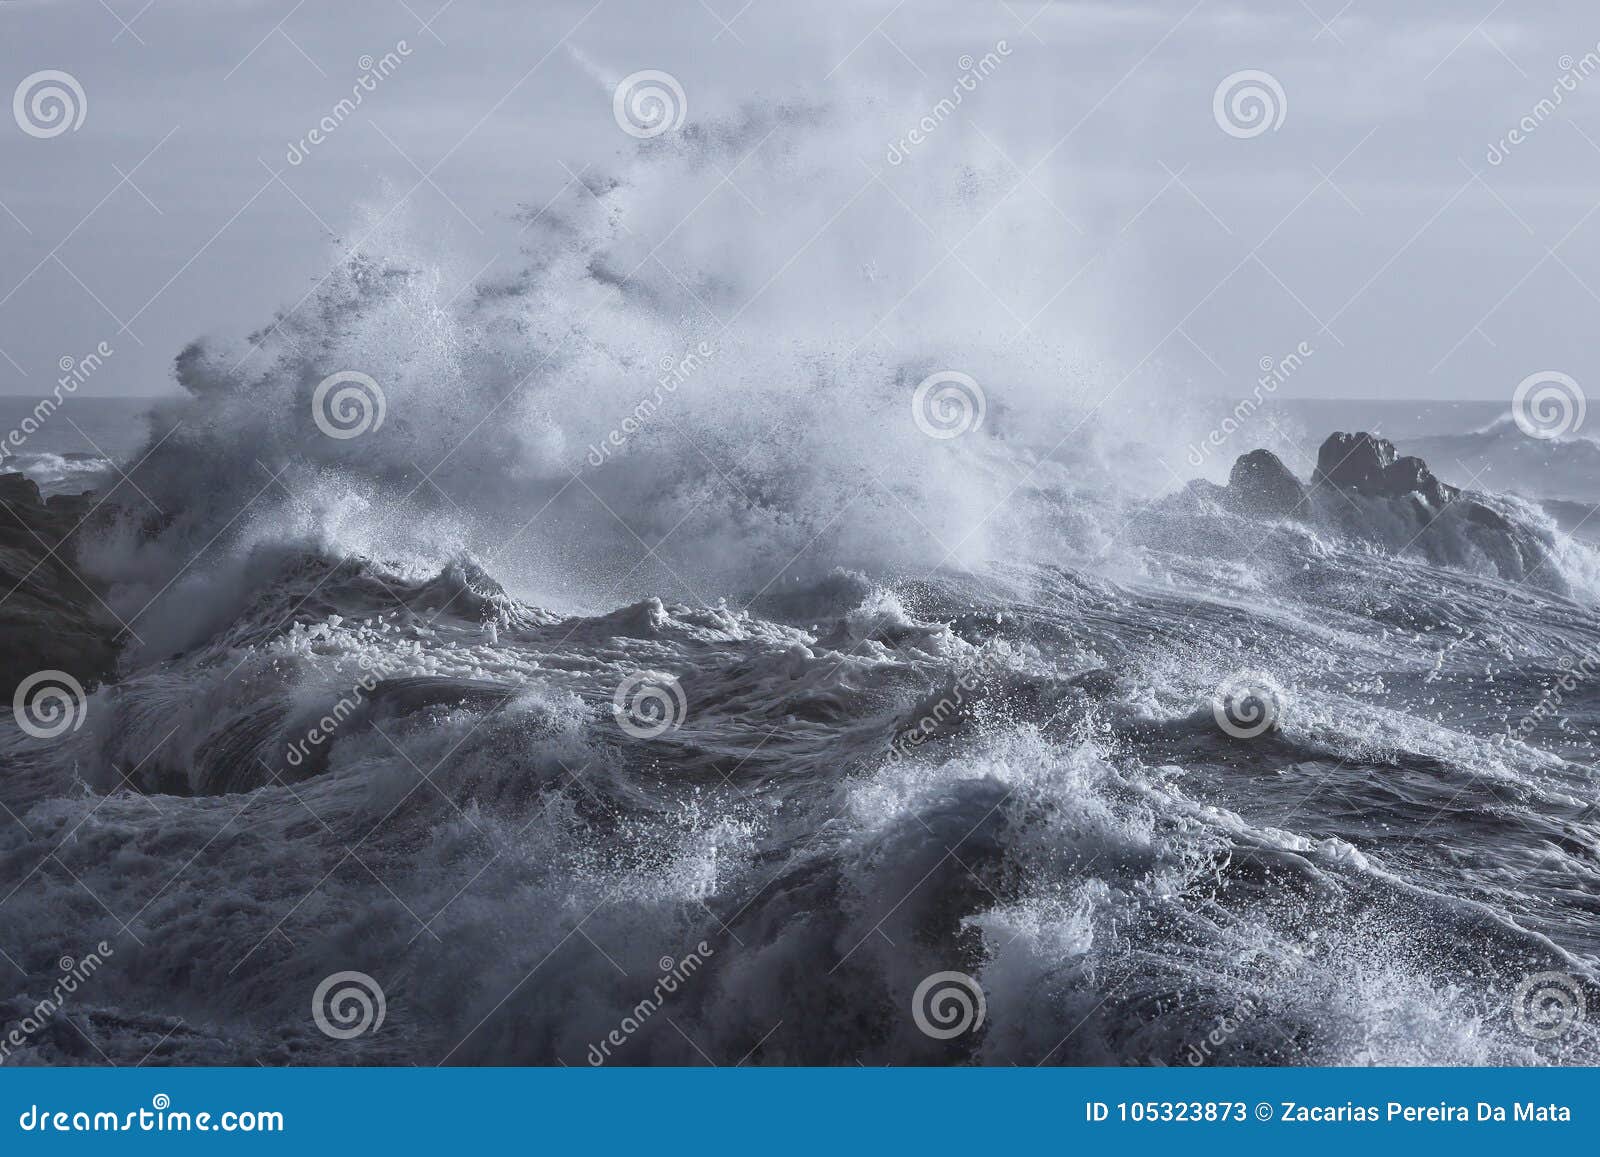 rough sea on the coast